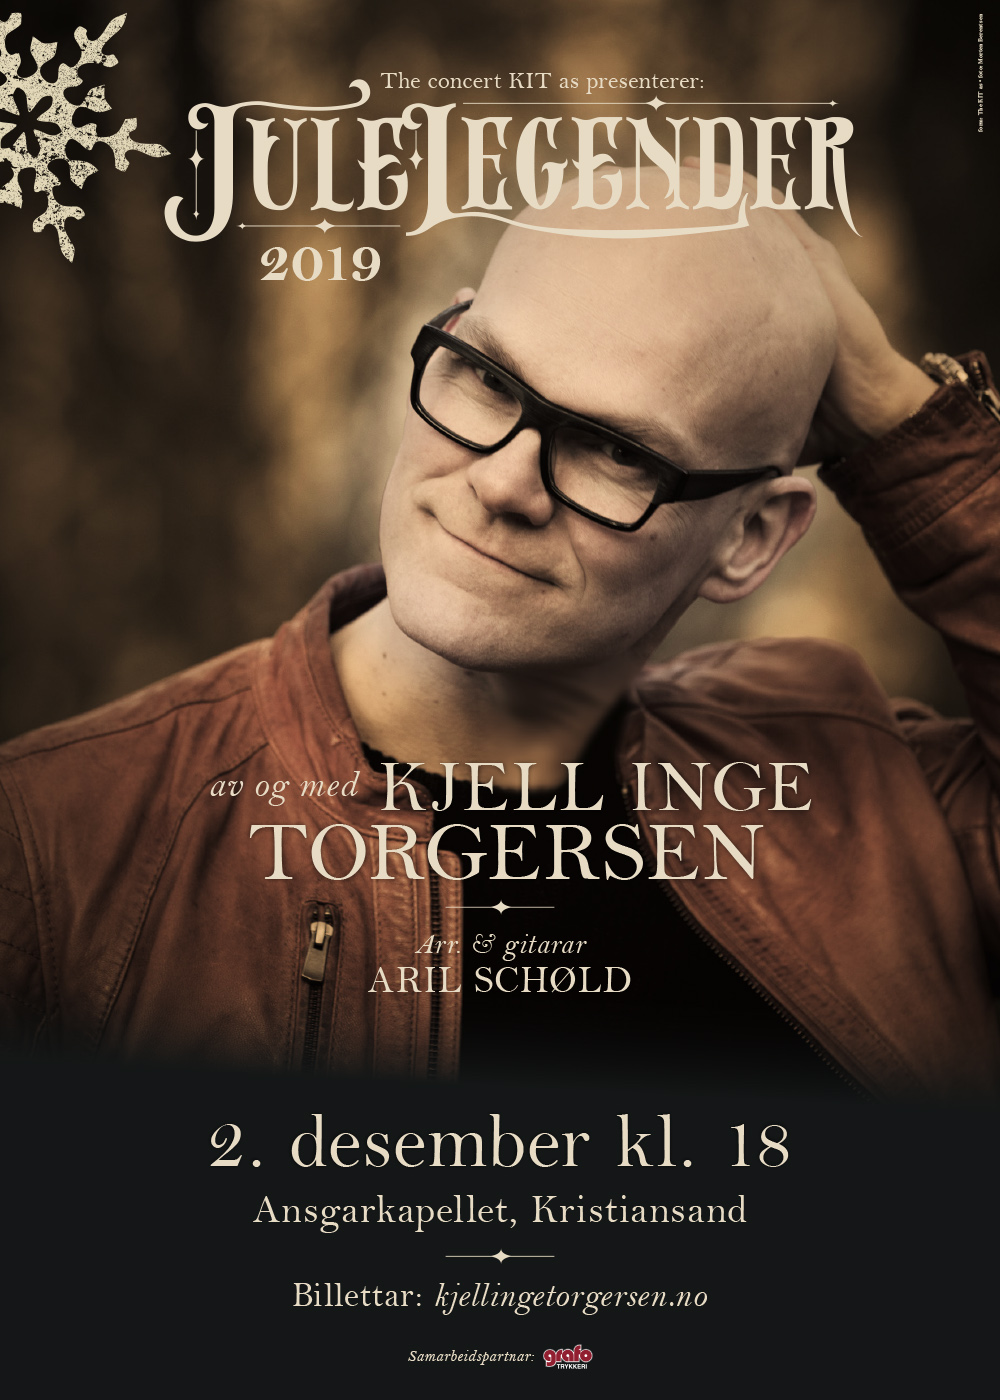 Julelegender:2019 – plakat Kristiansand. (Foto: Morten Berentsen. Form: The KIT as)